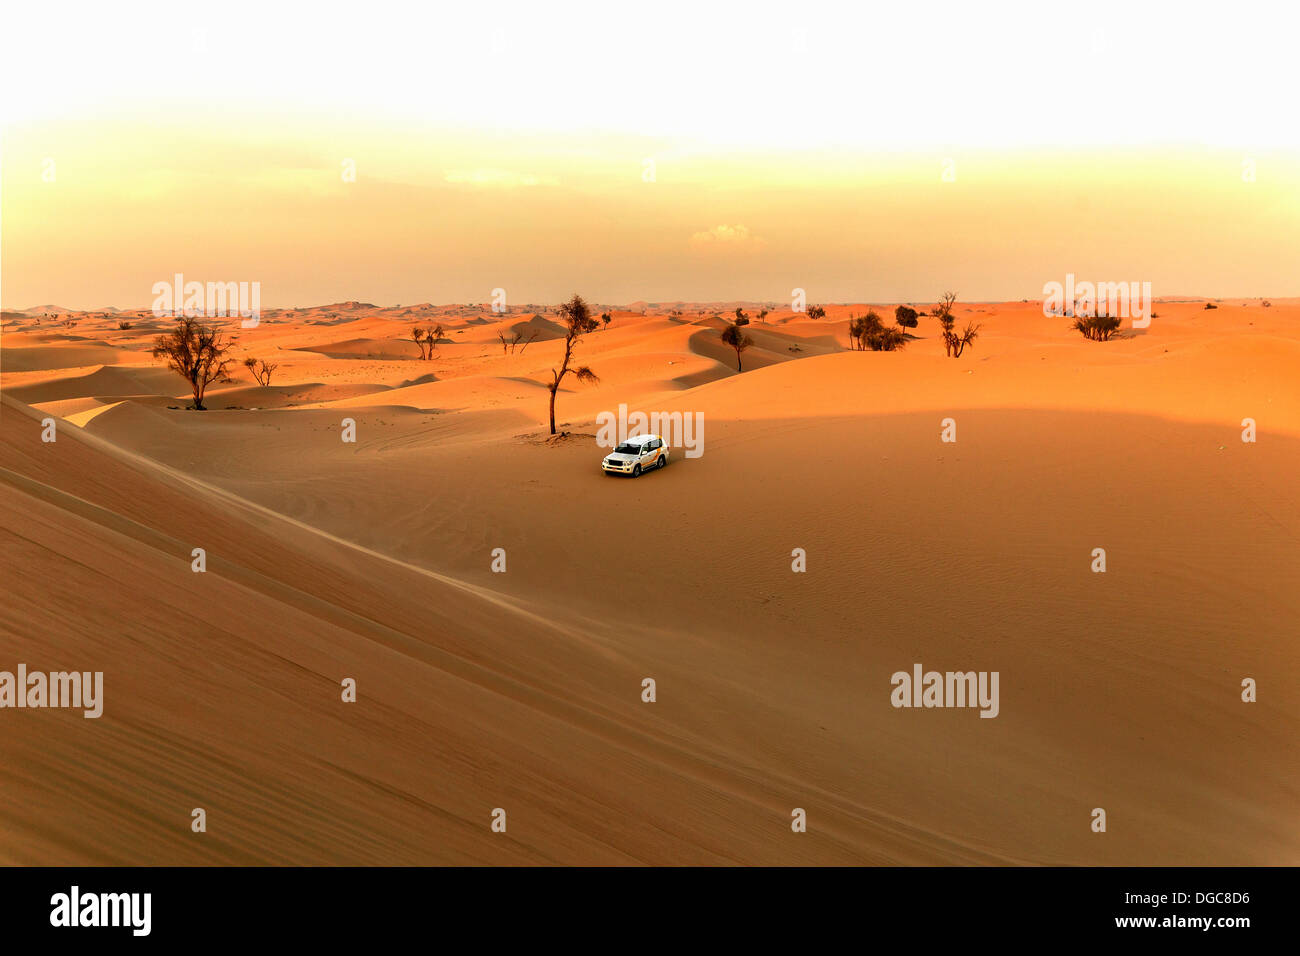 Vehículo fuera de carretera en pleno desierto, Adu Dhabi, Emiratos Árabes Unidos Foto de stock